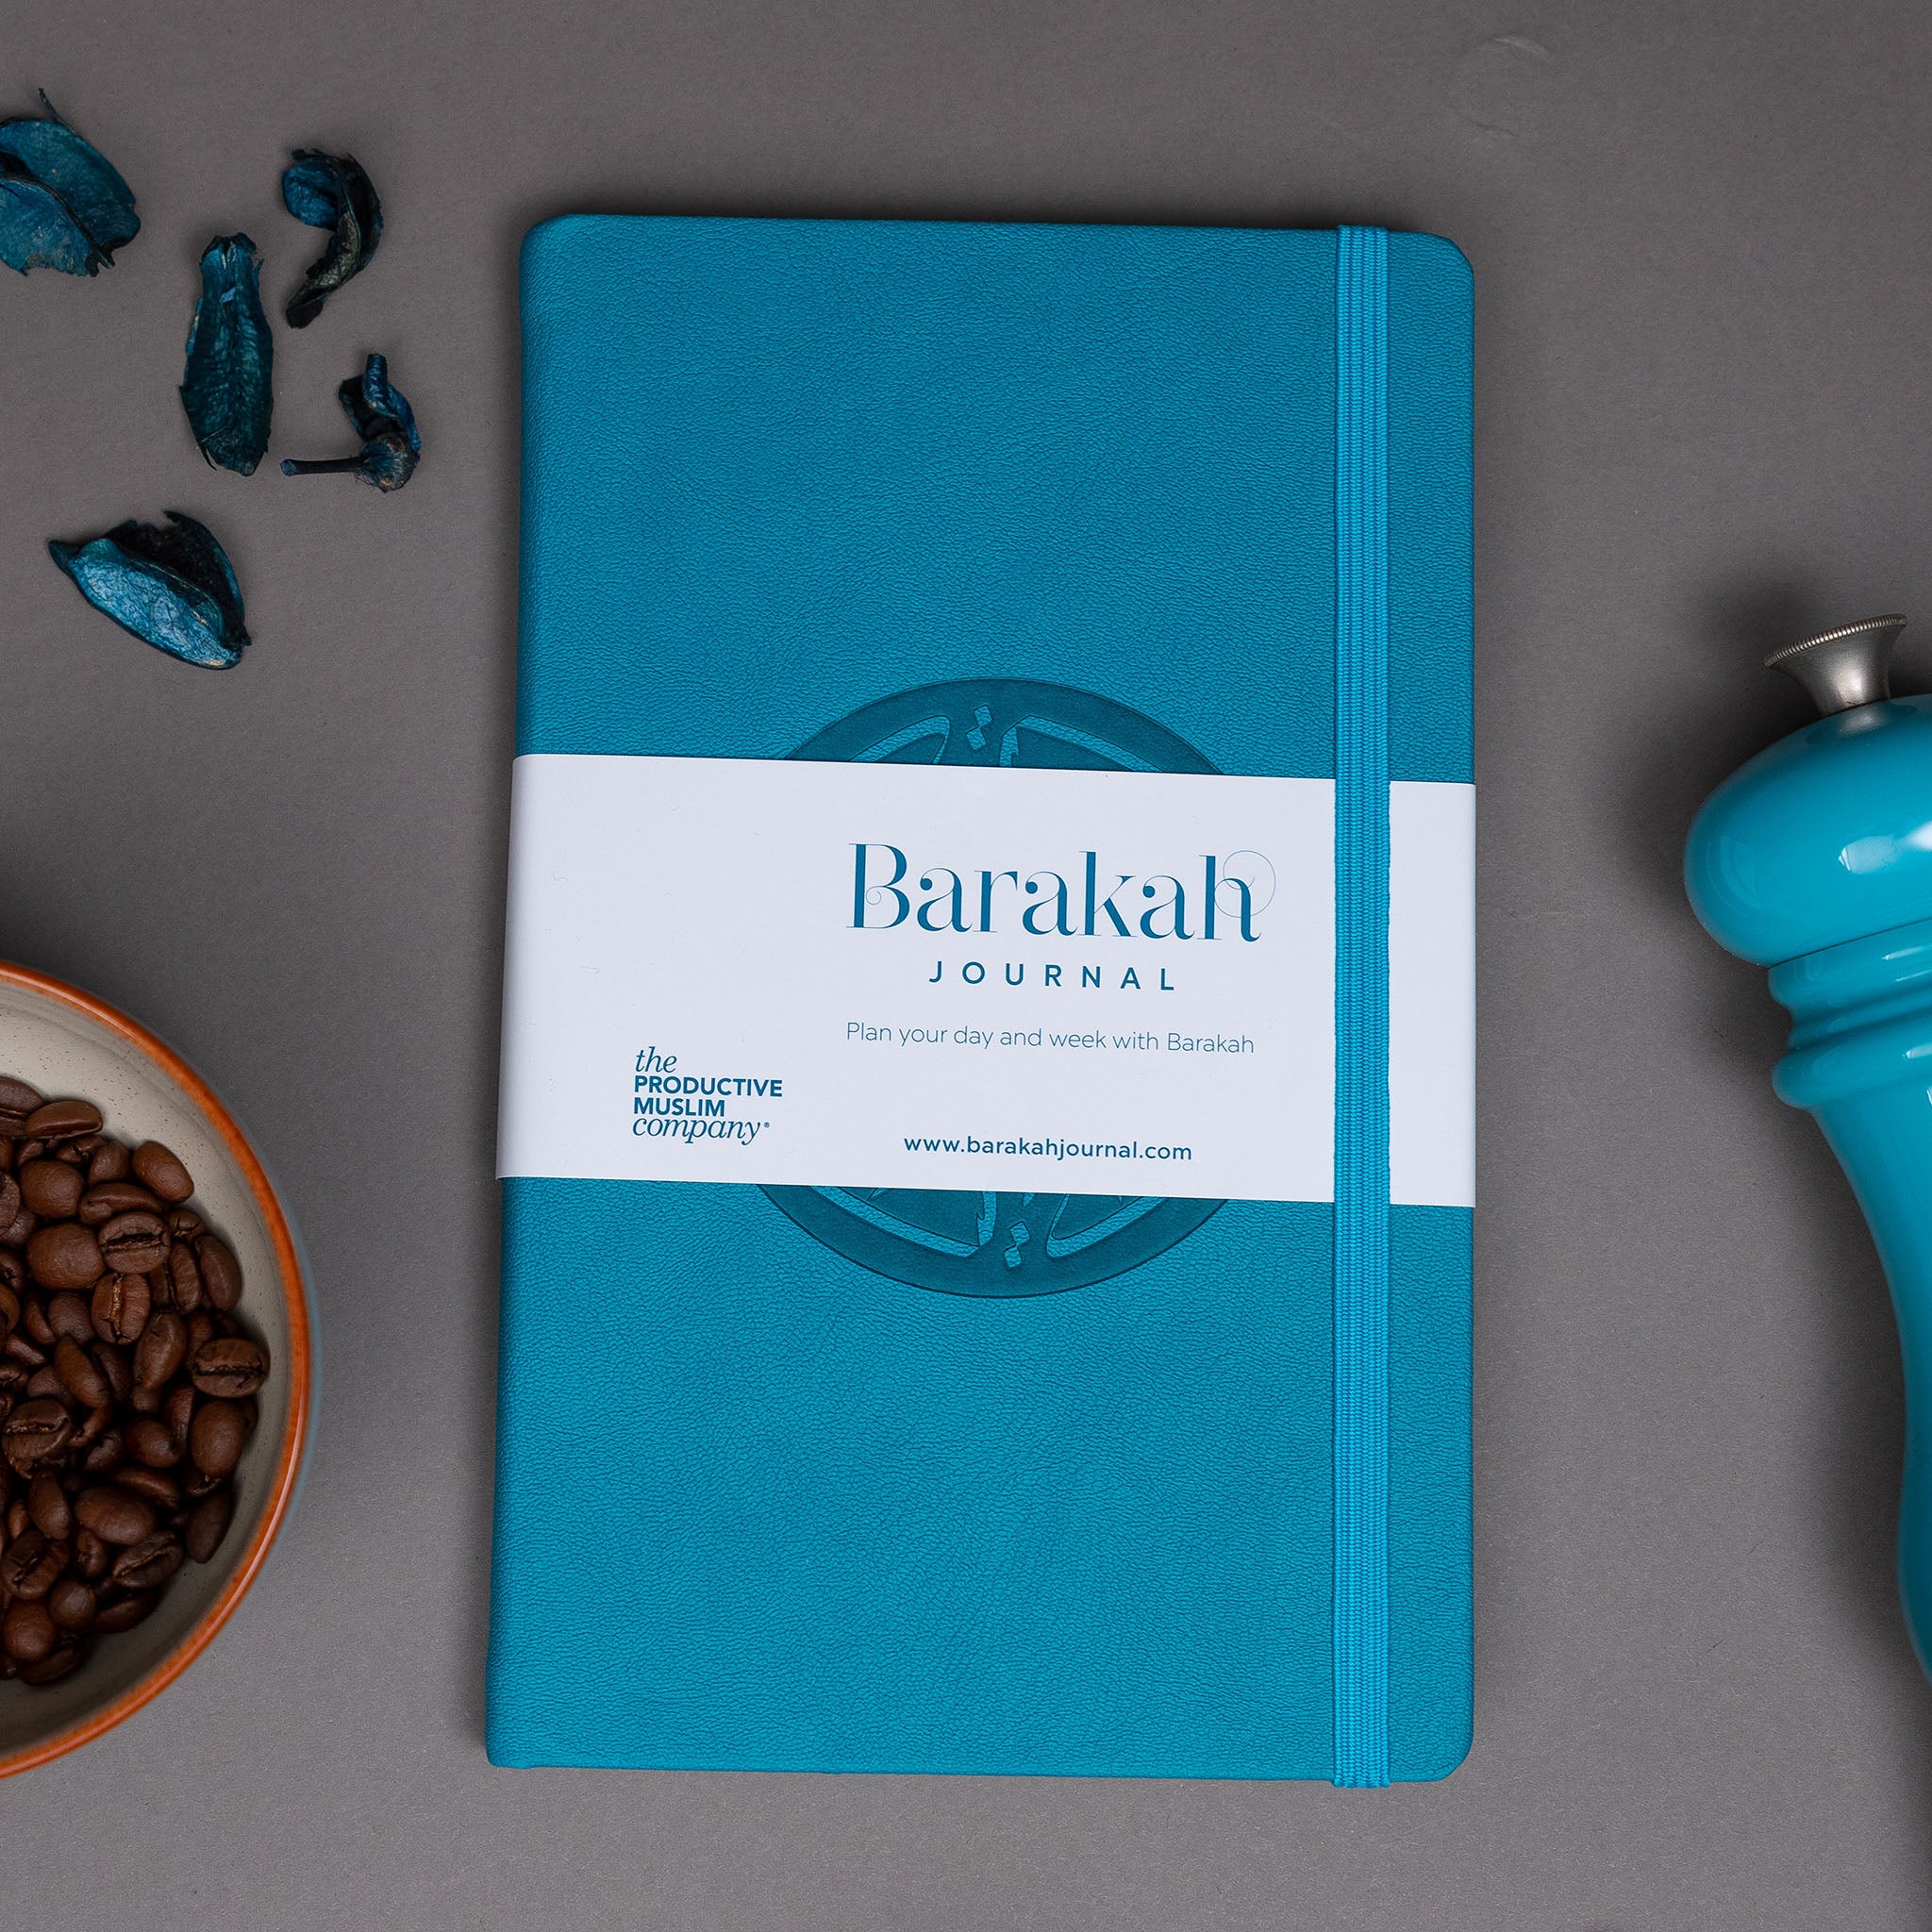 The Barakah Journal